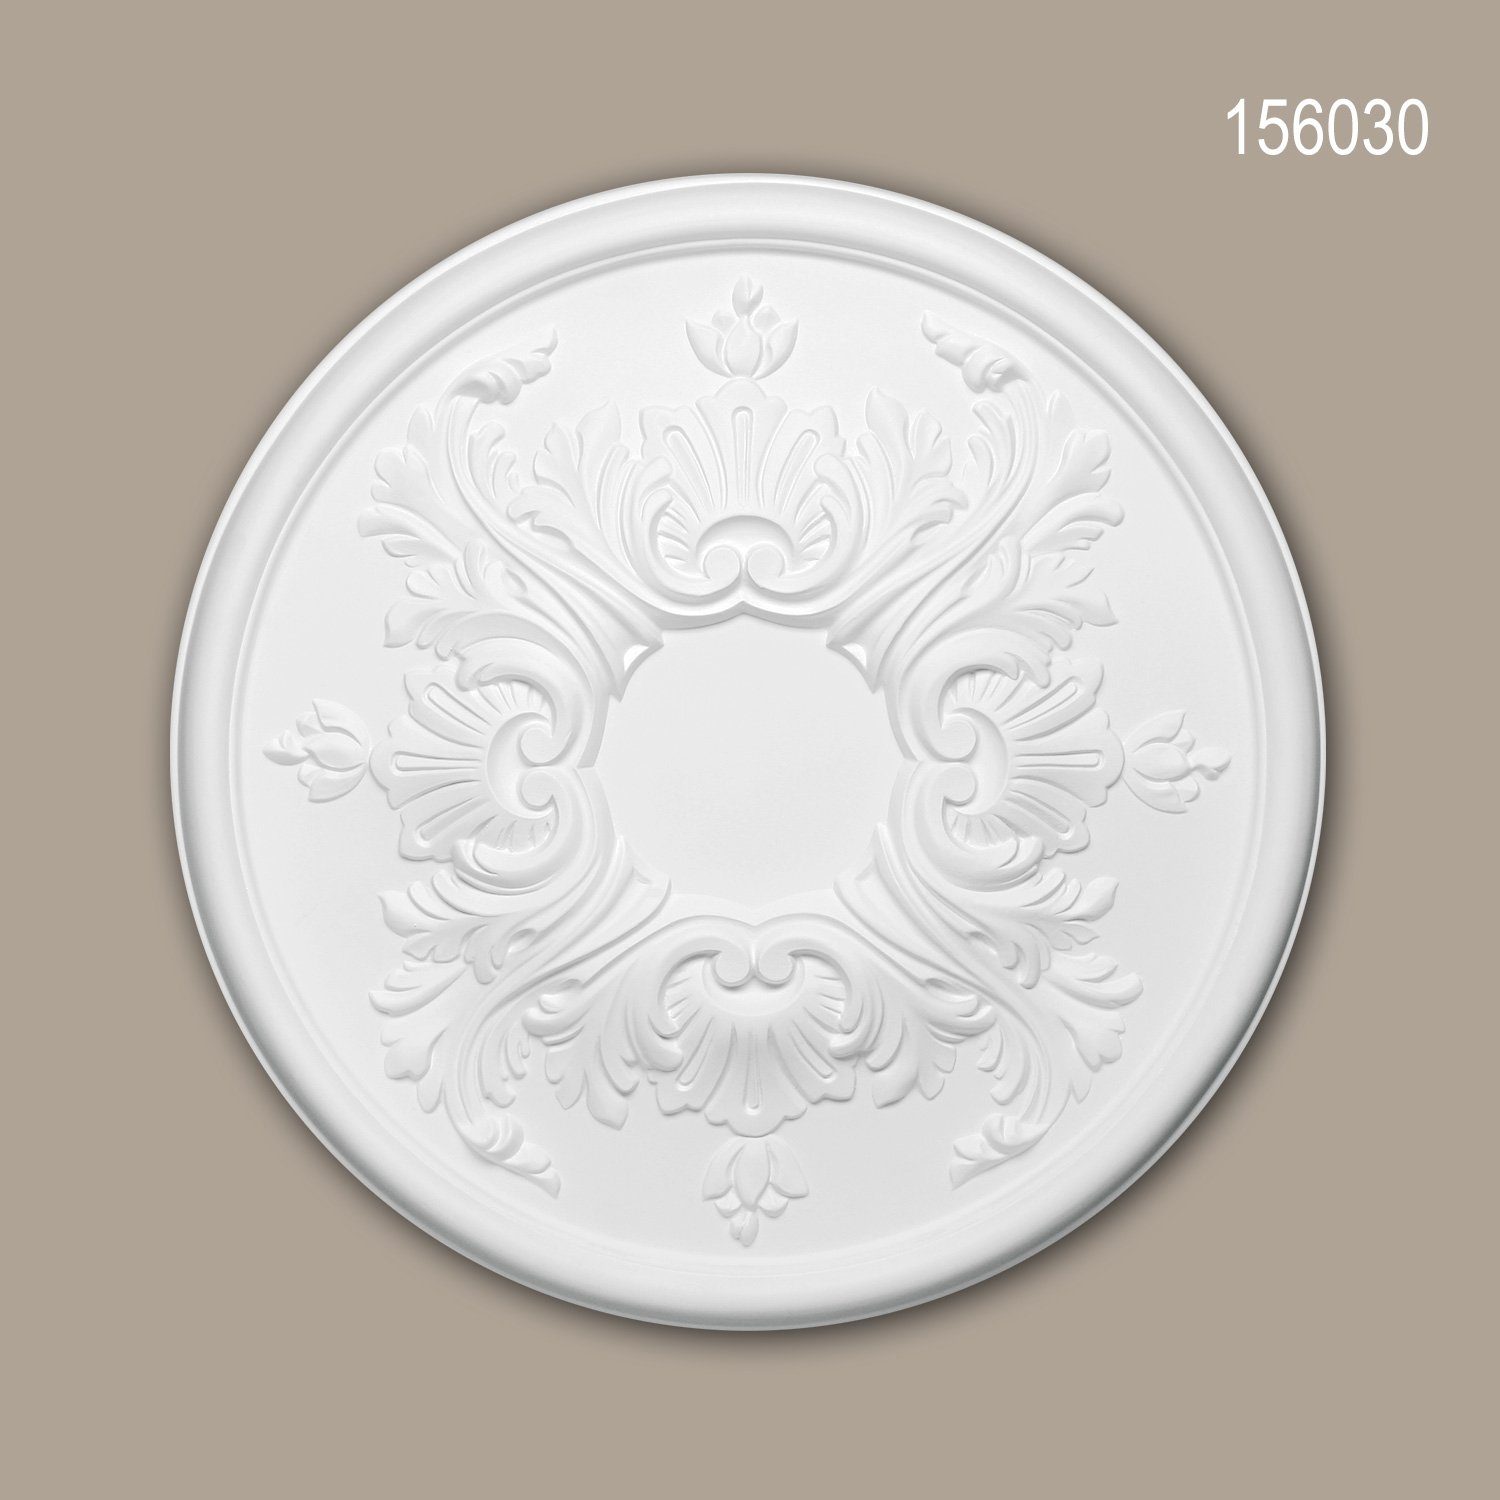 Deckenrosette, Barock 1 Durchmesser St., 156030 Stuckrosette, Stil: Medallion, 39,5 (Rosette, cm), weiß, / Decken-Rosette Rokoko Deckenelement, Profhome Zierelement, vorgrundiert,